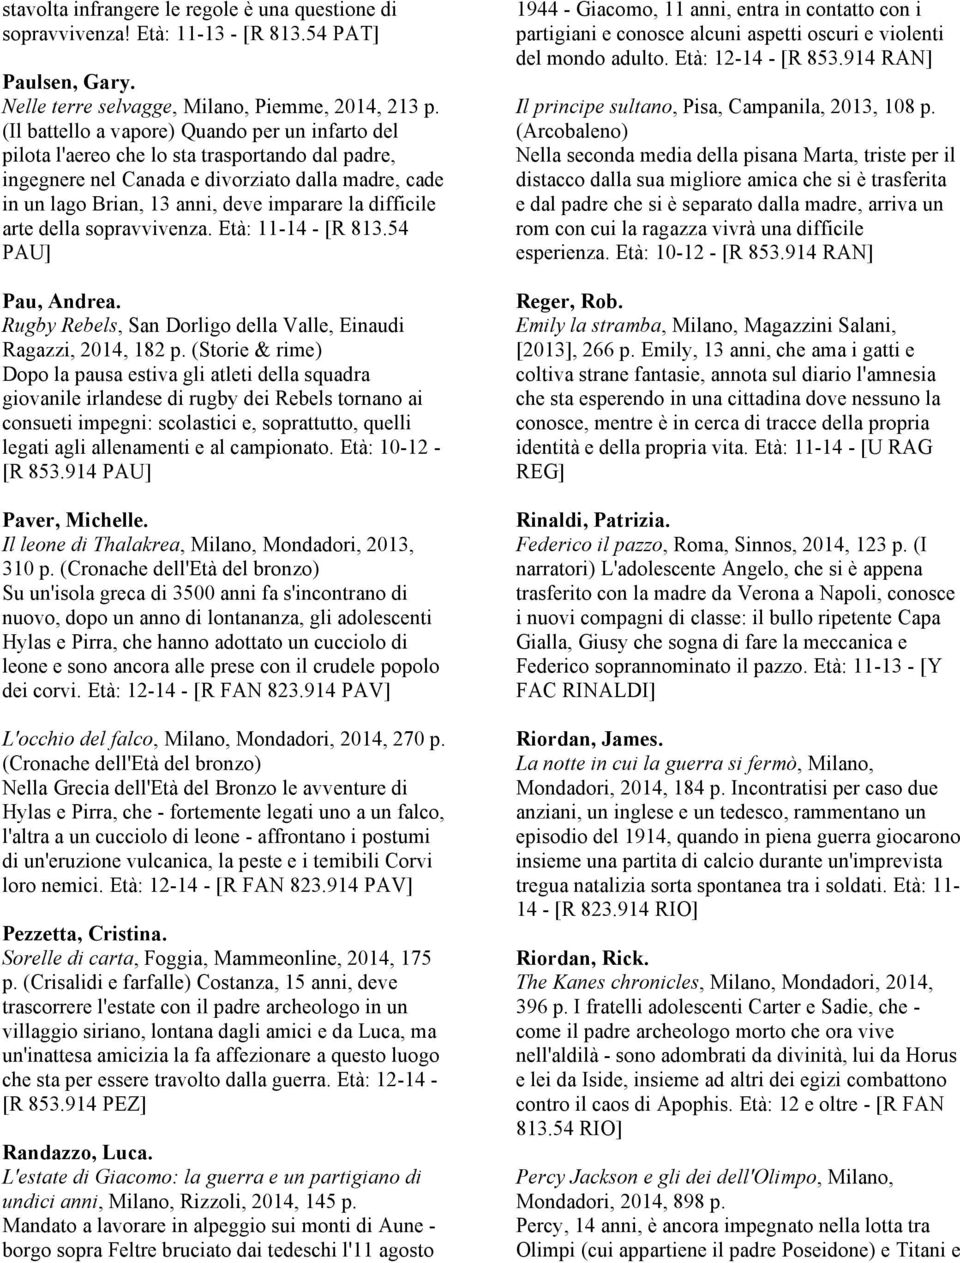 difficile arte della sopravvivenza. Età: 11-14 - [R 813.54 PAU] Pau, Andrea. Rugby Rebels, San Dorligo della Valle, Einaudi Ragazzi, 2014, 182 p.